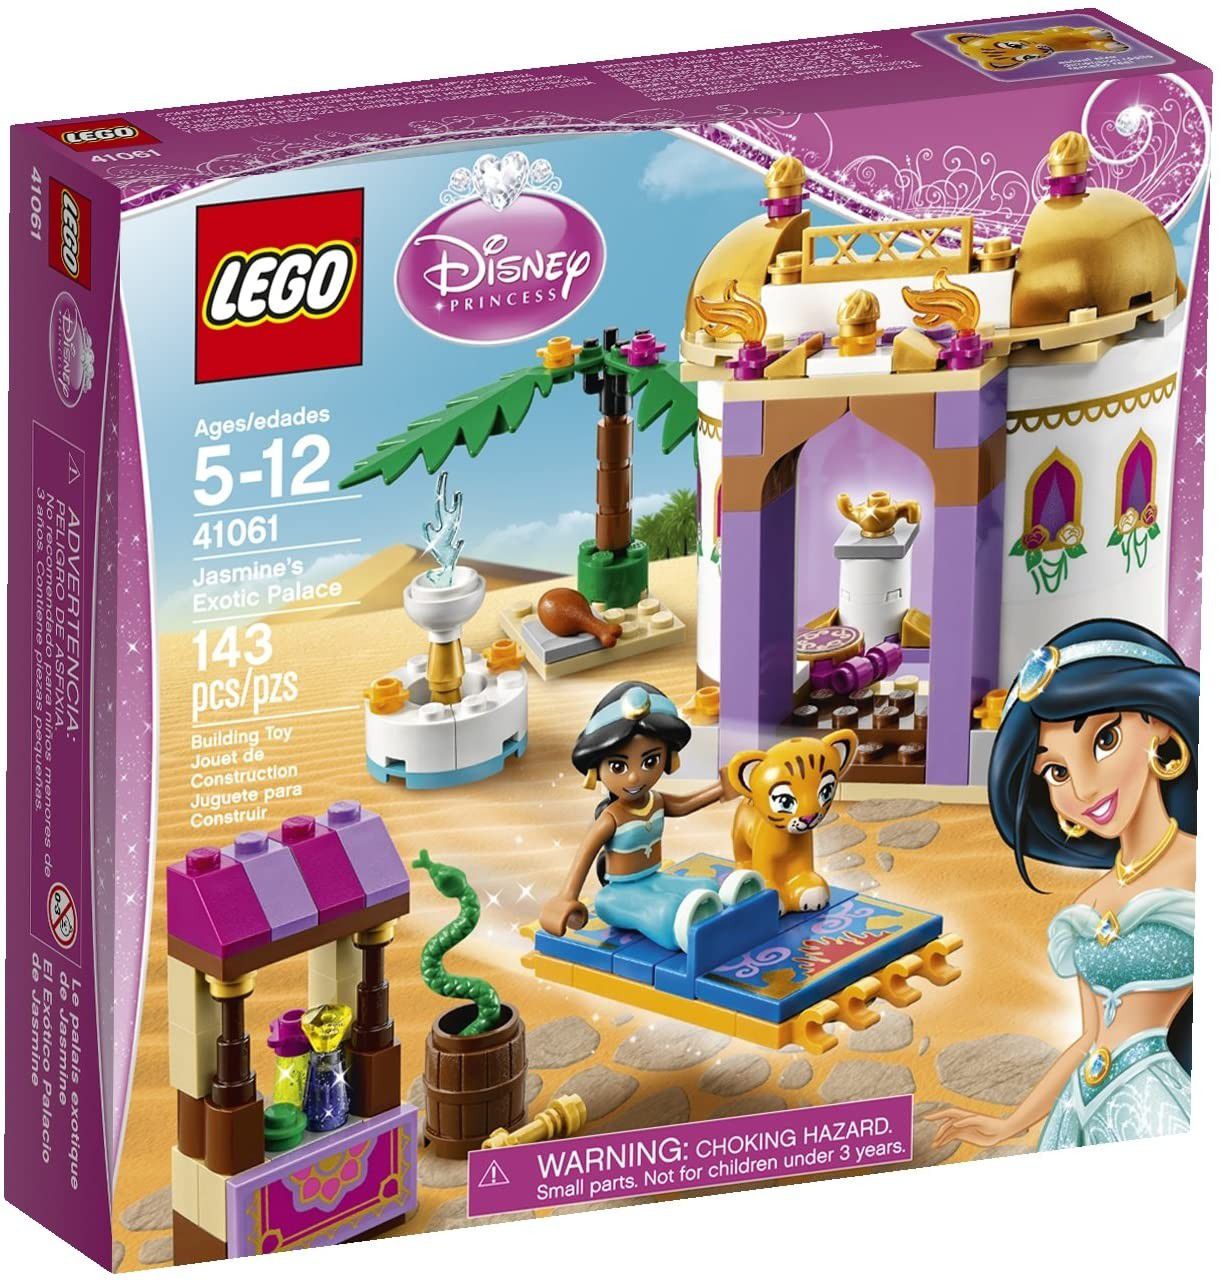 New Retired Lego Disney Princess Jasmine's Exotic Palace Sealed 41061 Set